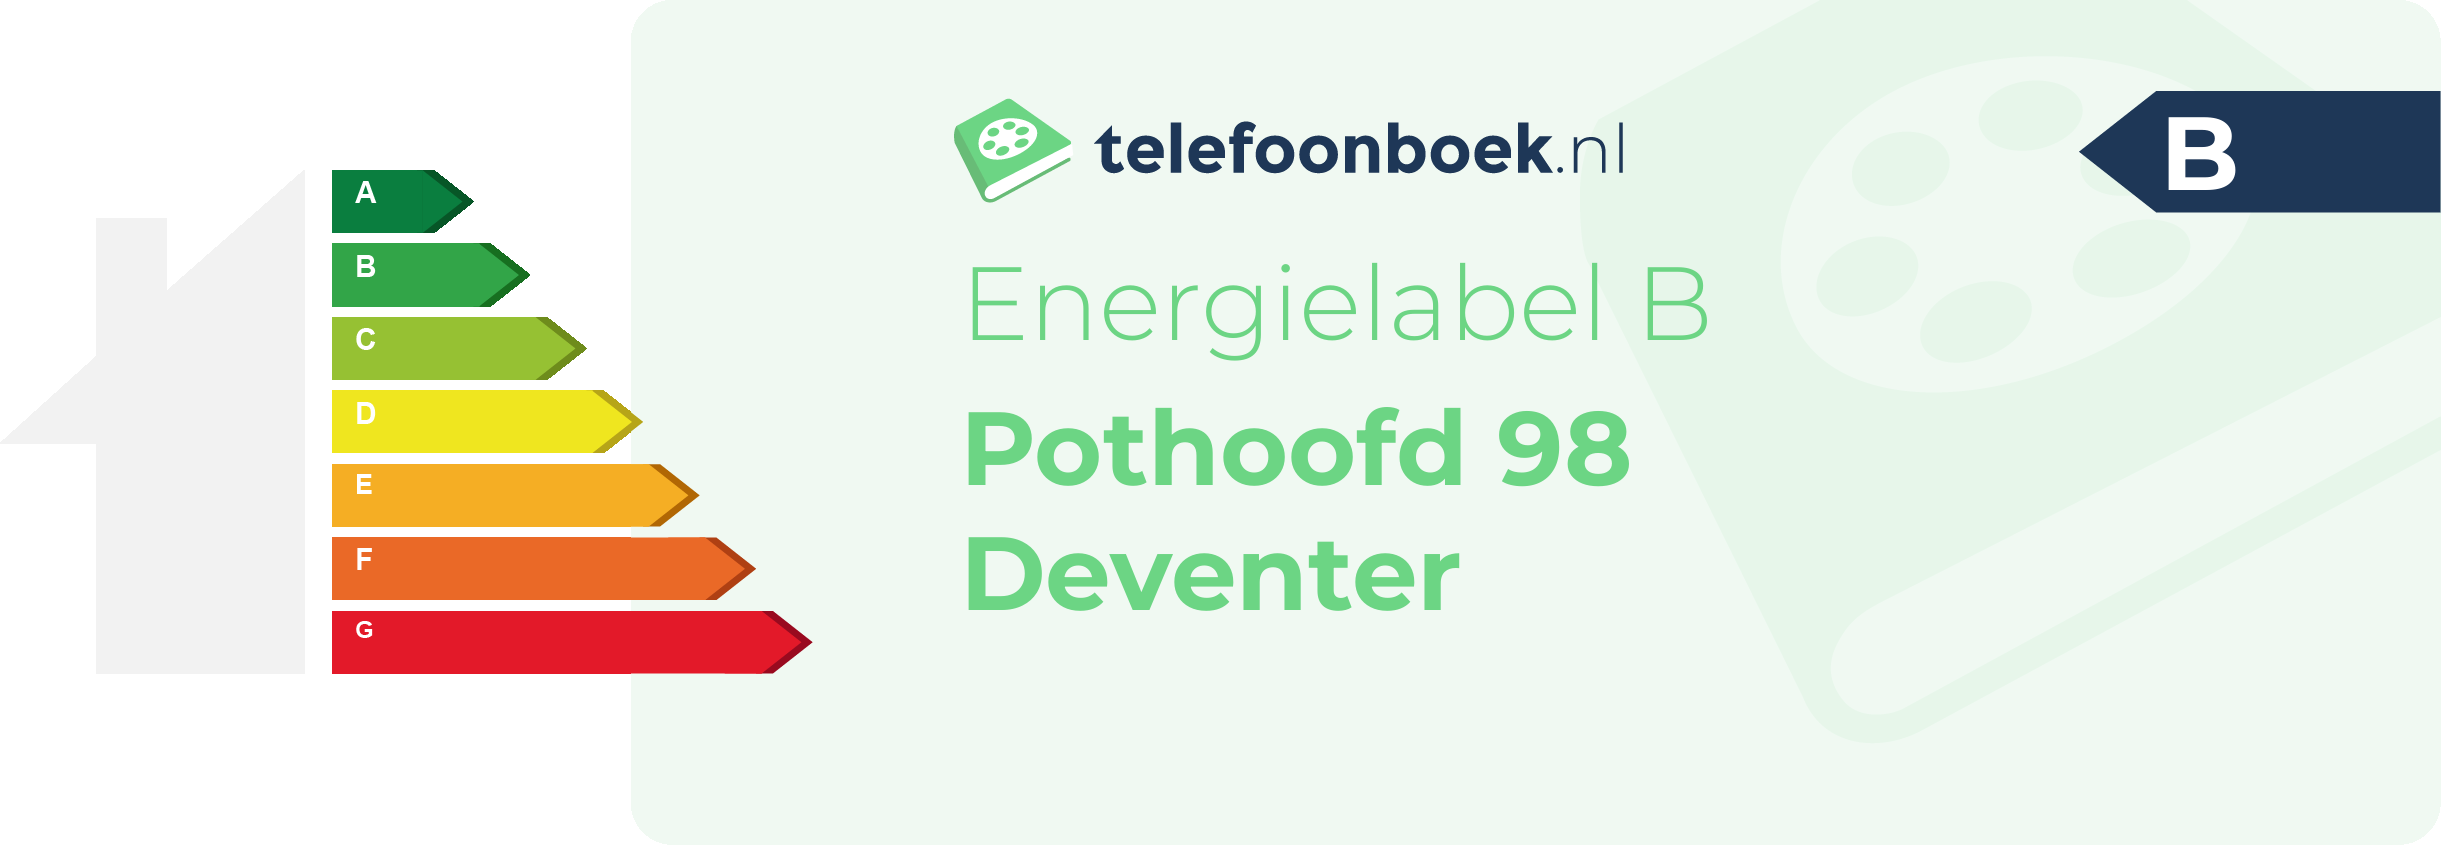 Energielabel Pothoofd 98 Deventer